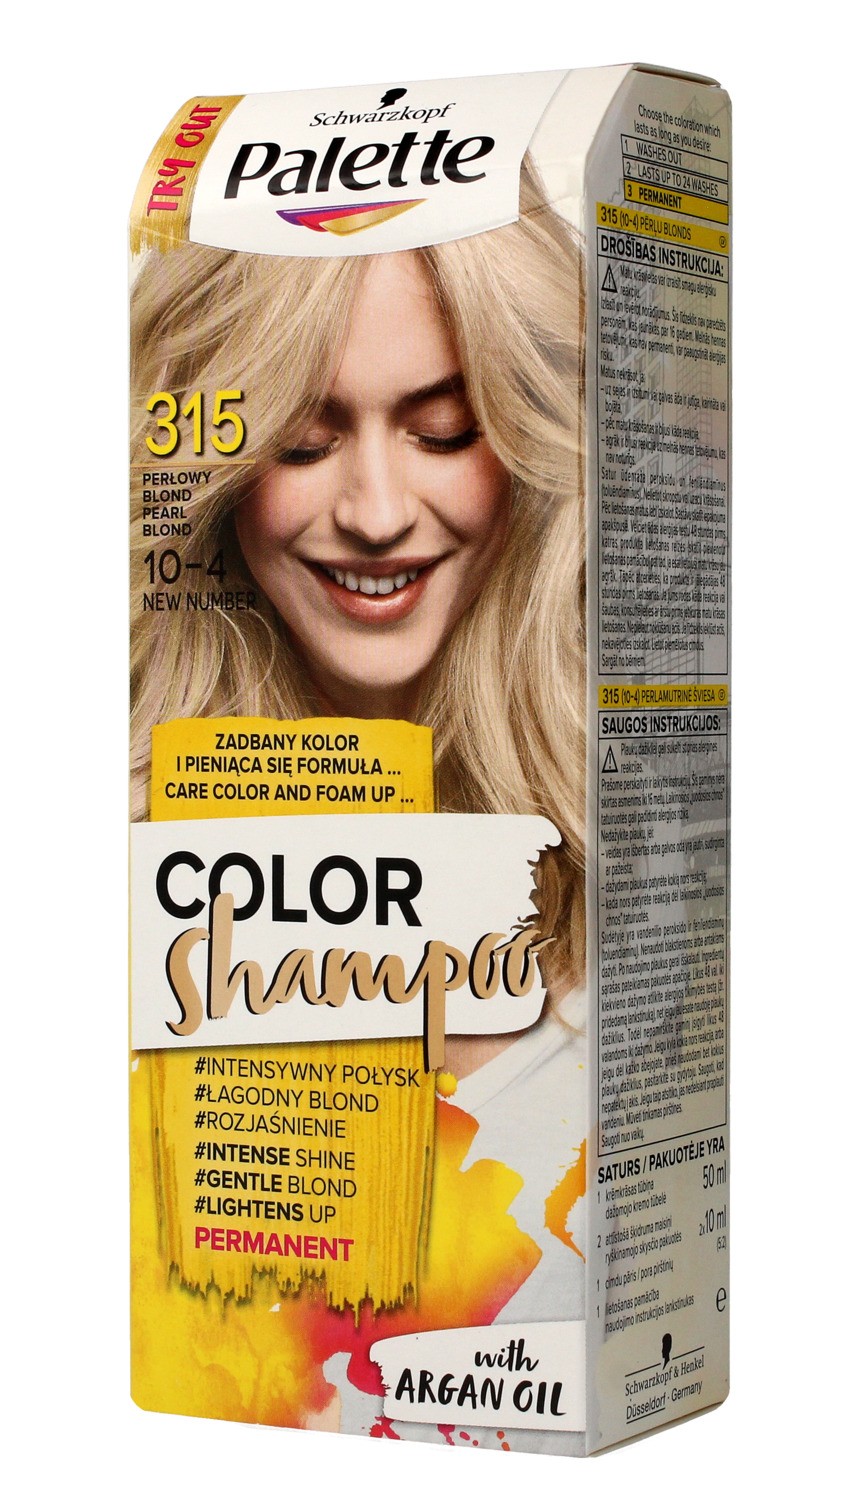 palette szampon sredni blond opinie